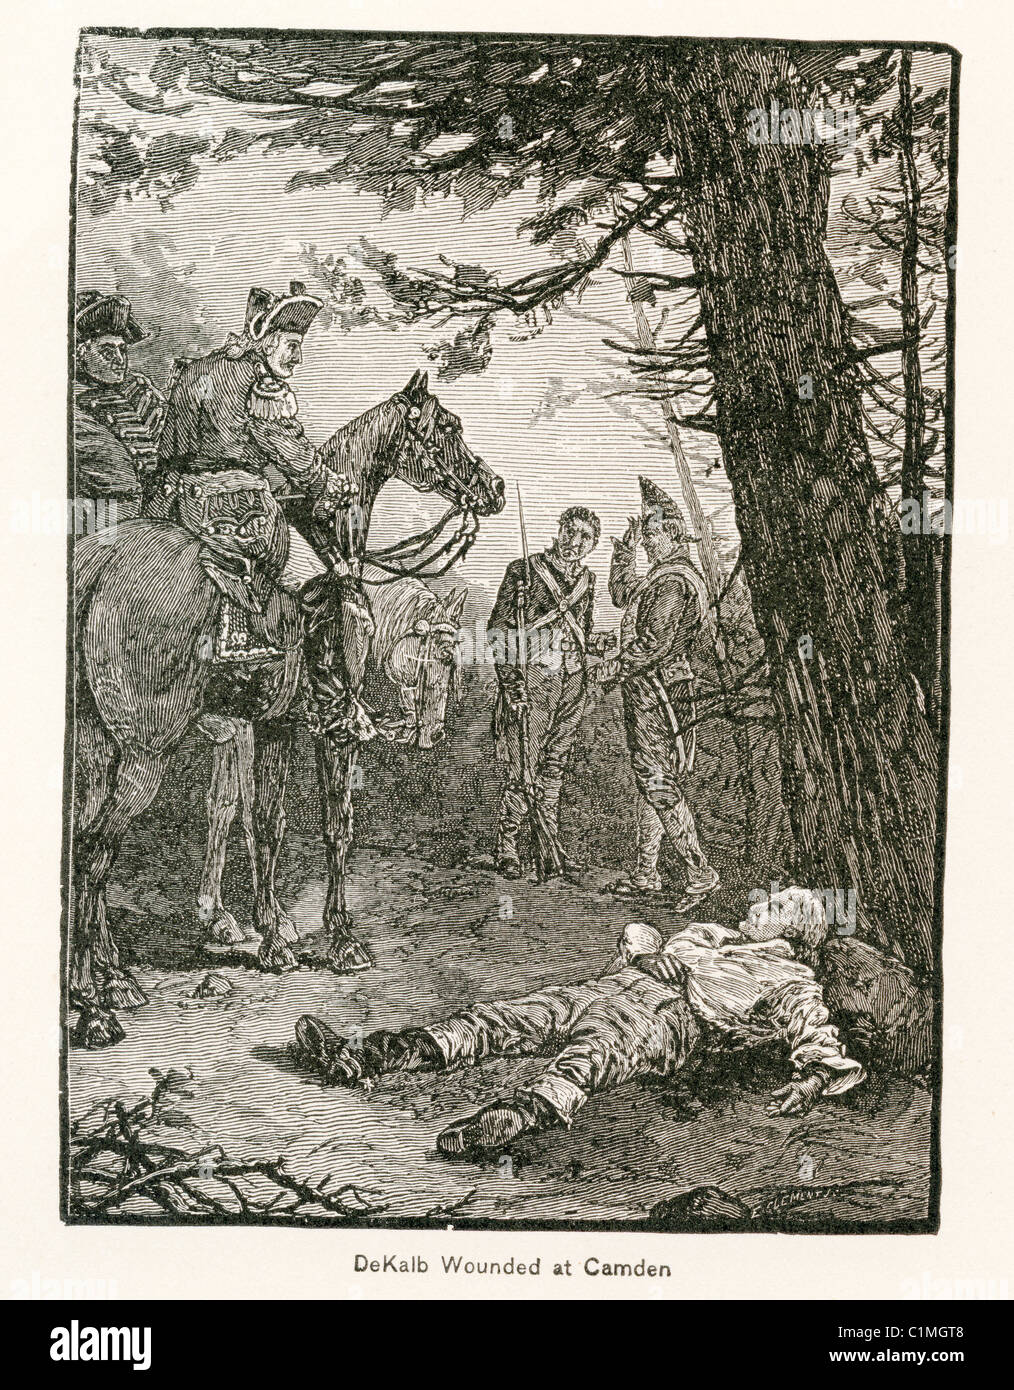 Vecchia litografia di Johann De Kalb essendo feriti - maggiore generale nell'esercito continentale durante la guerra rivoluzionaria americana Foto Stock